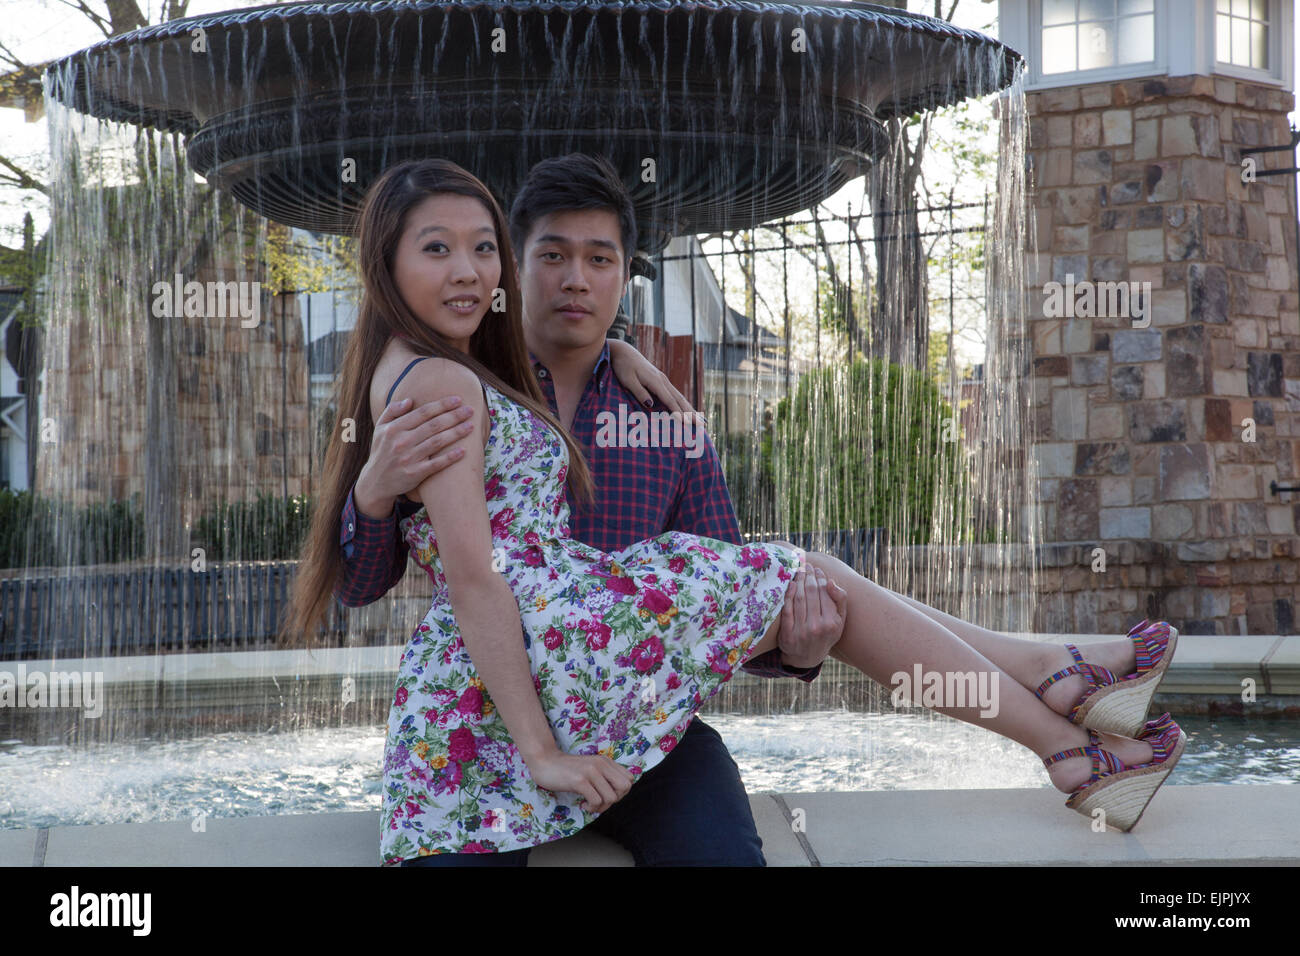 Asiatique romantique couple outdoors, femme et homme, il tient dans ses bras Banque D'Images